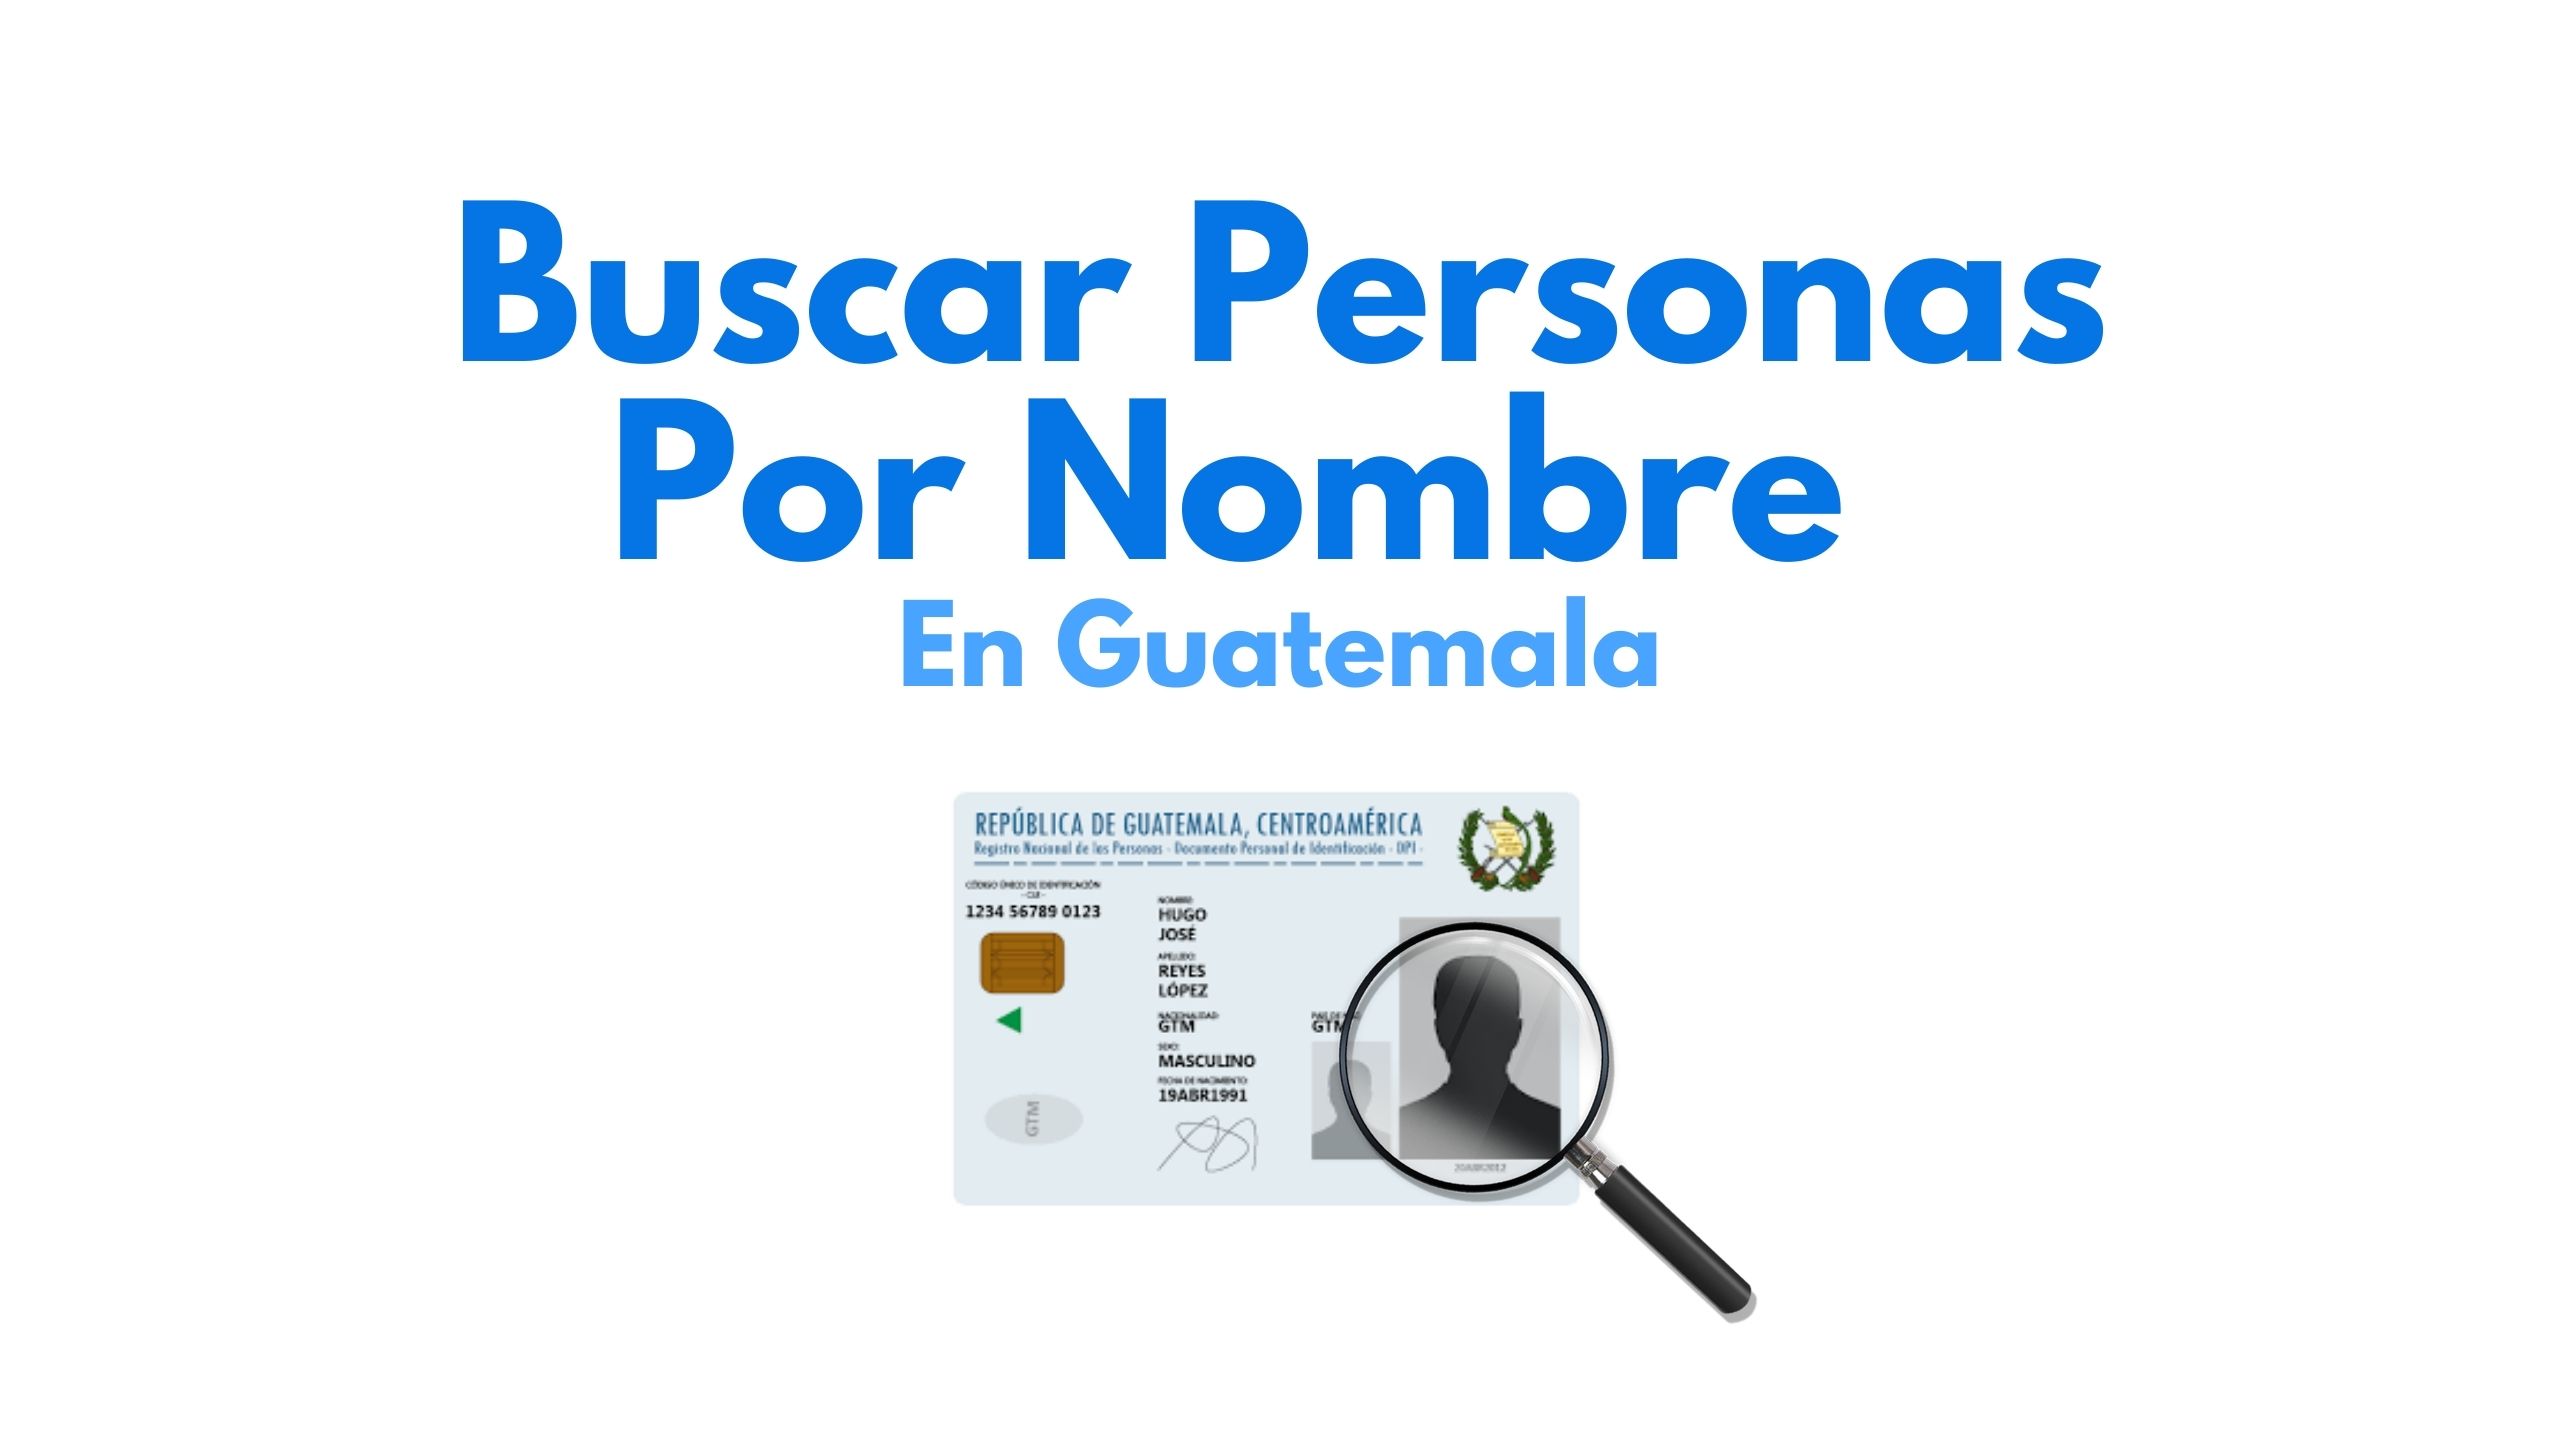 Buscar personas por nombre en Guatemala